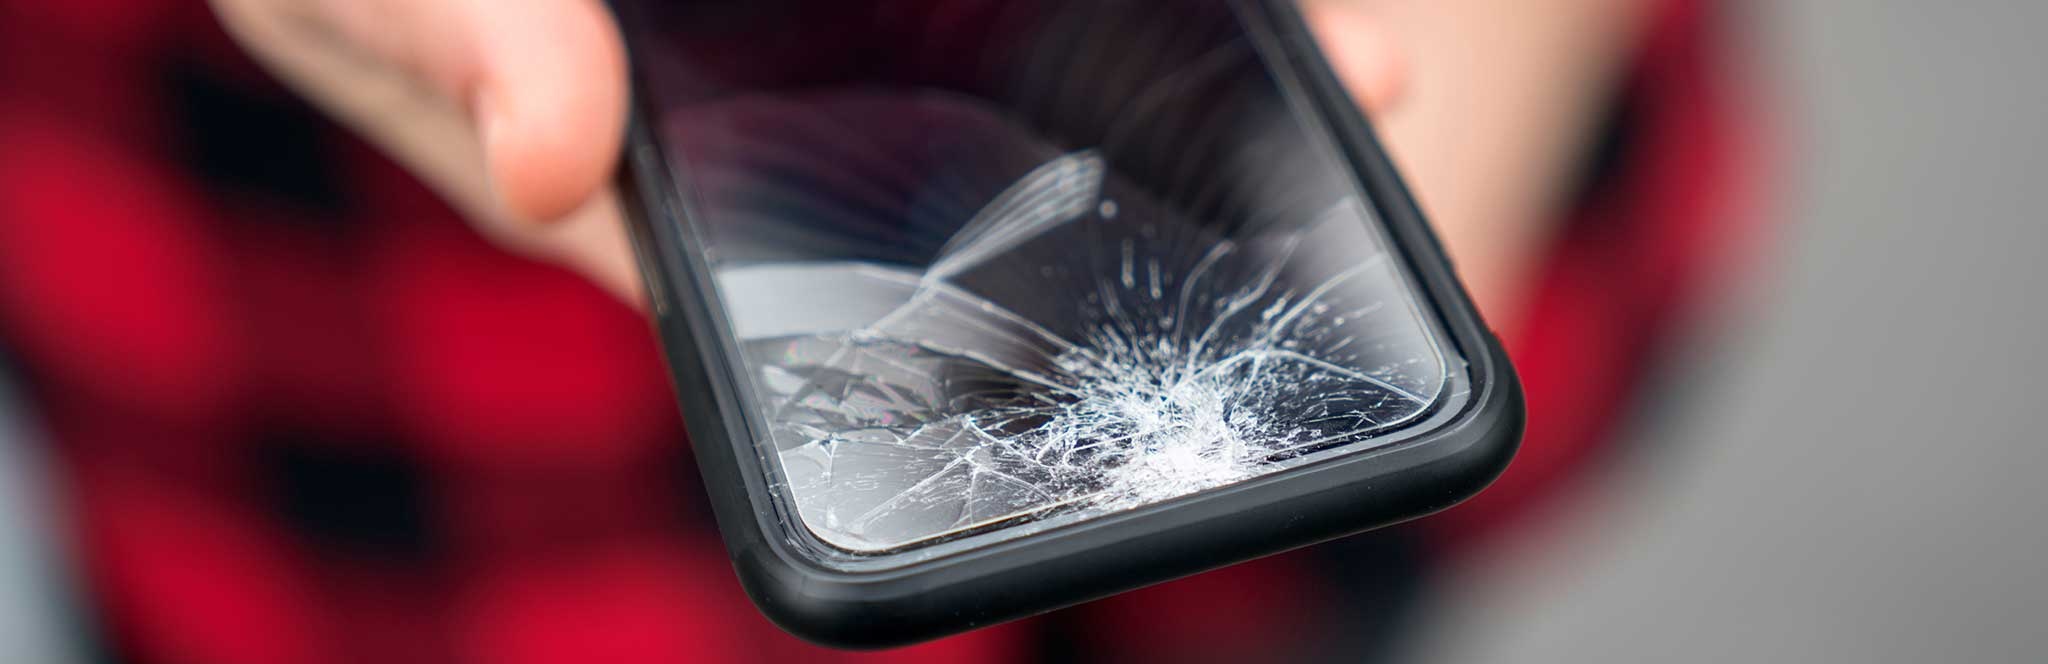 Versicherung für dein kaputtes Smartphone